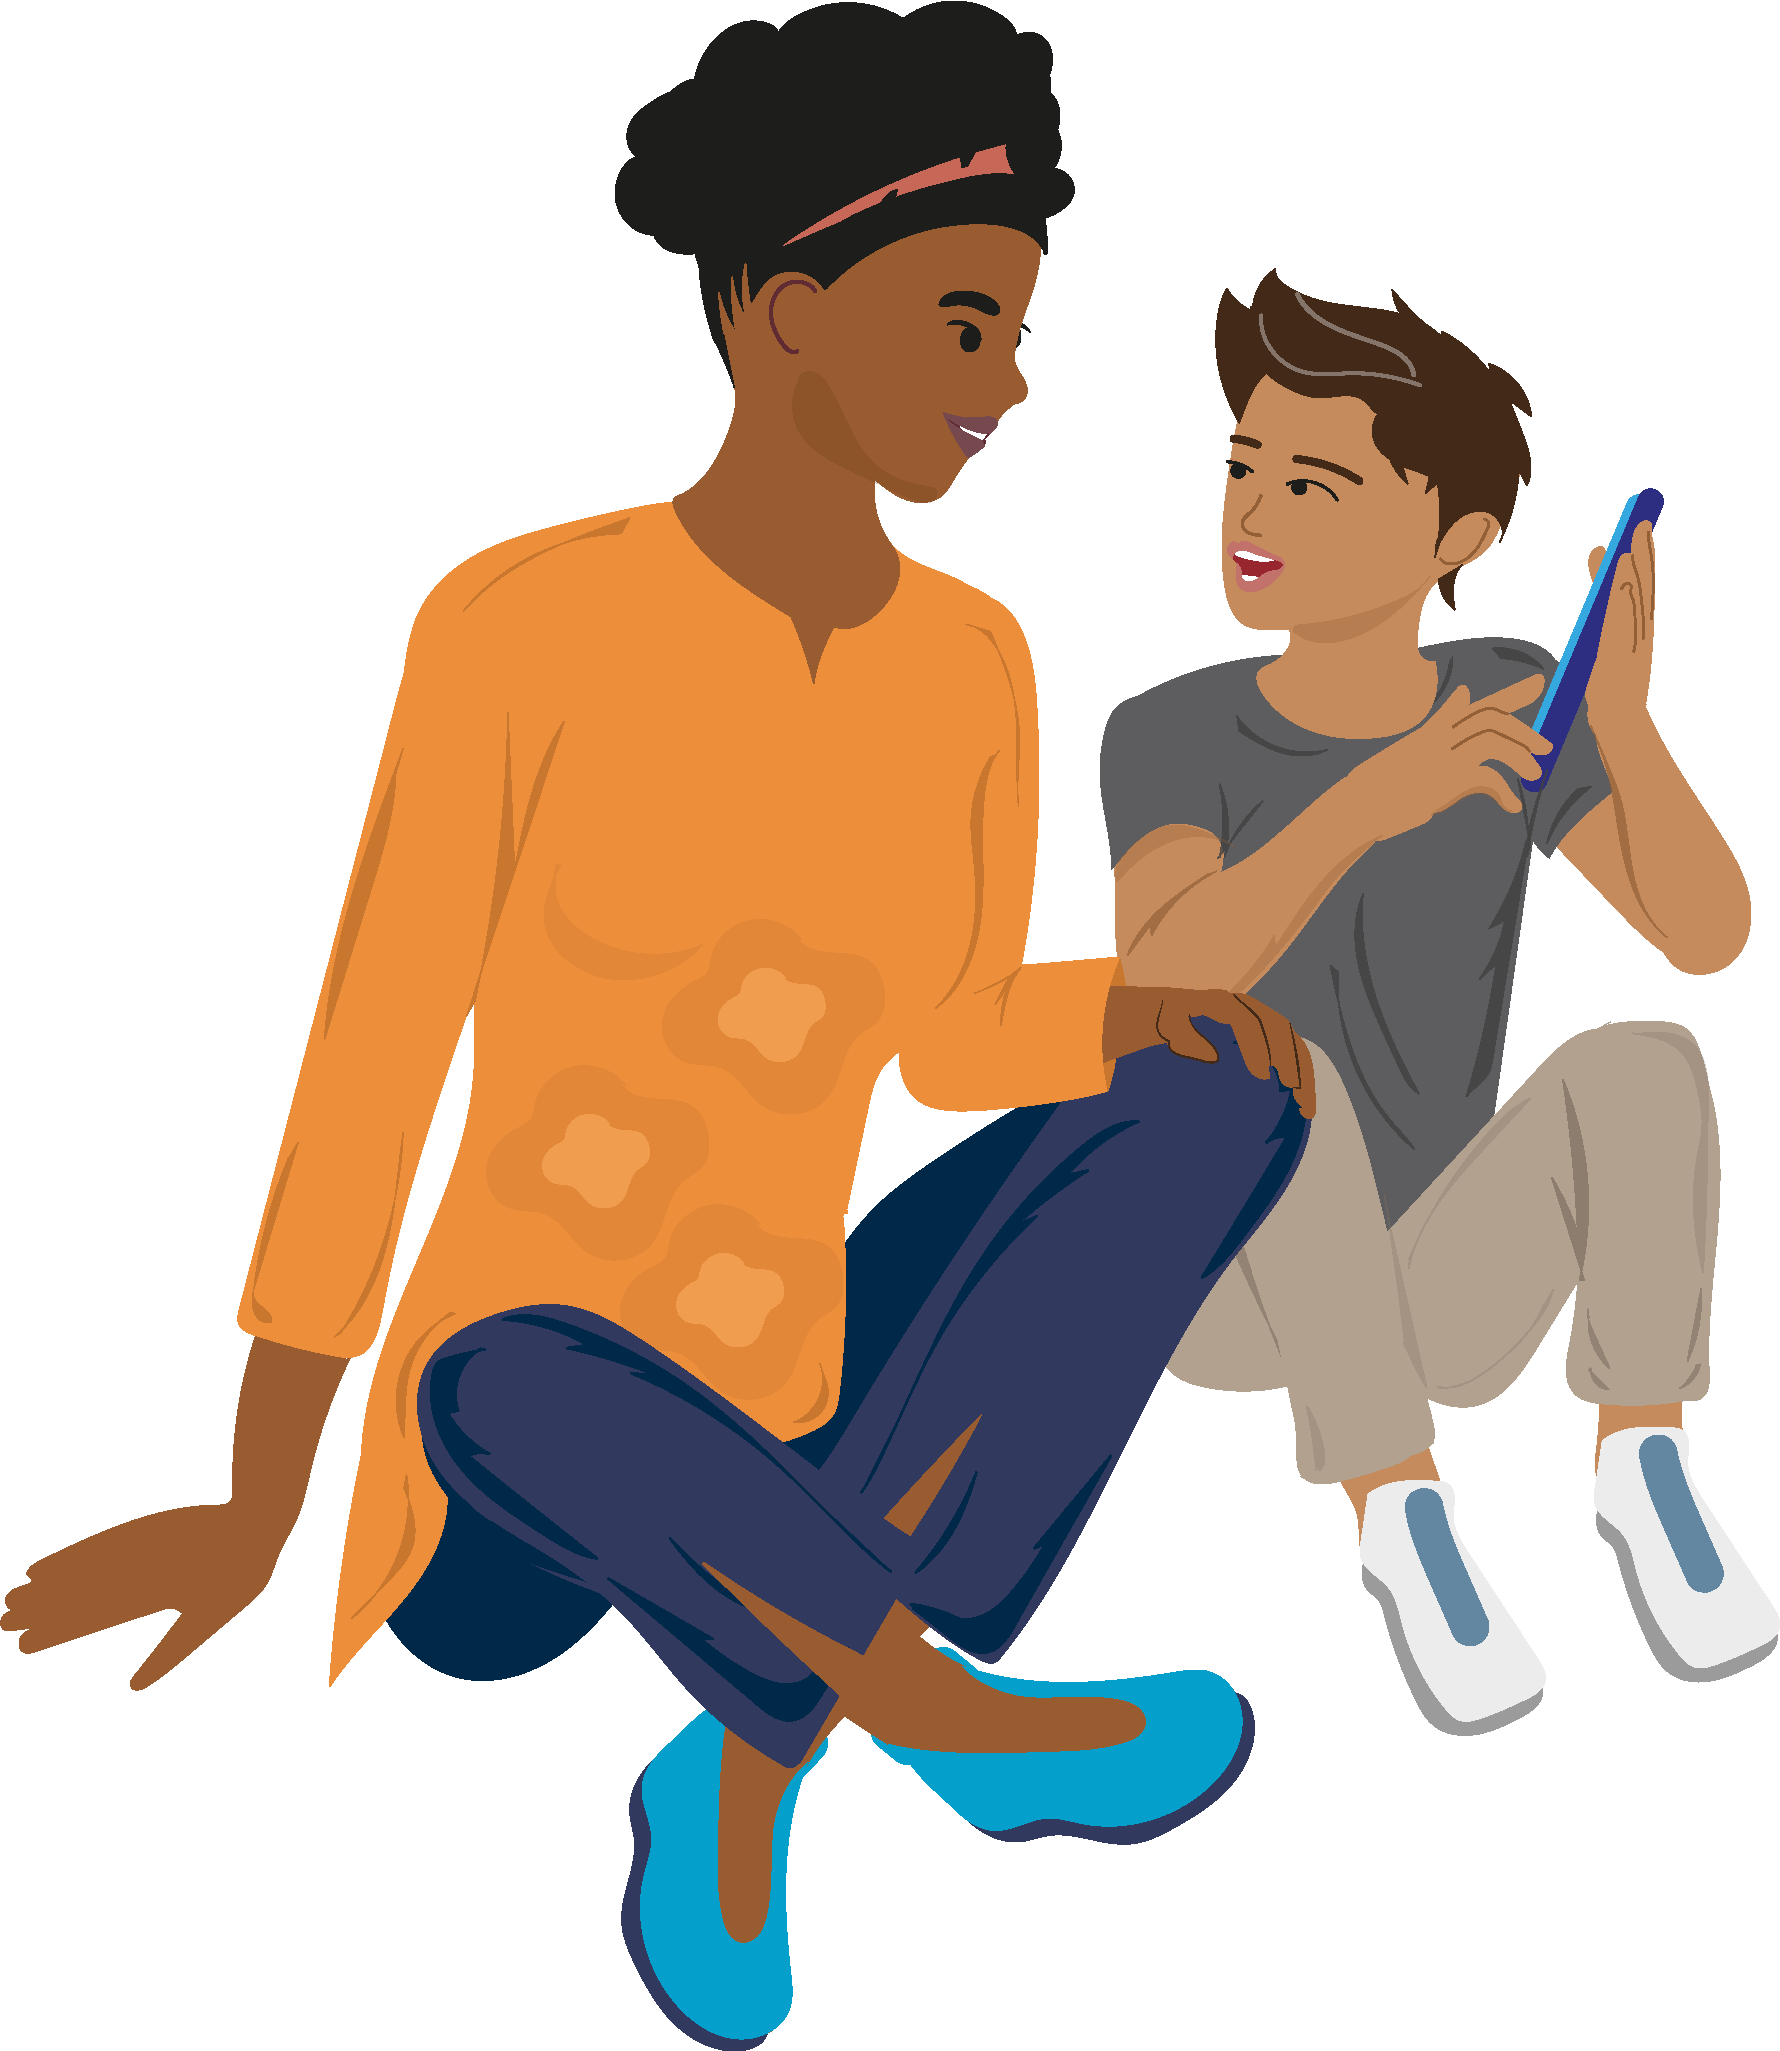 Lernmedien Illustration | Weiterbildung, Elternarbeit: Mutter und ca. 10-jähriger Sohn sitzen zusammen und unterhalten sich über Inhalte auf einem Smartphone.